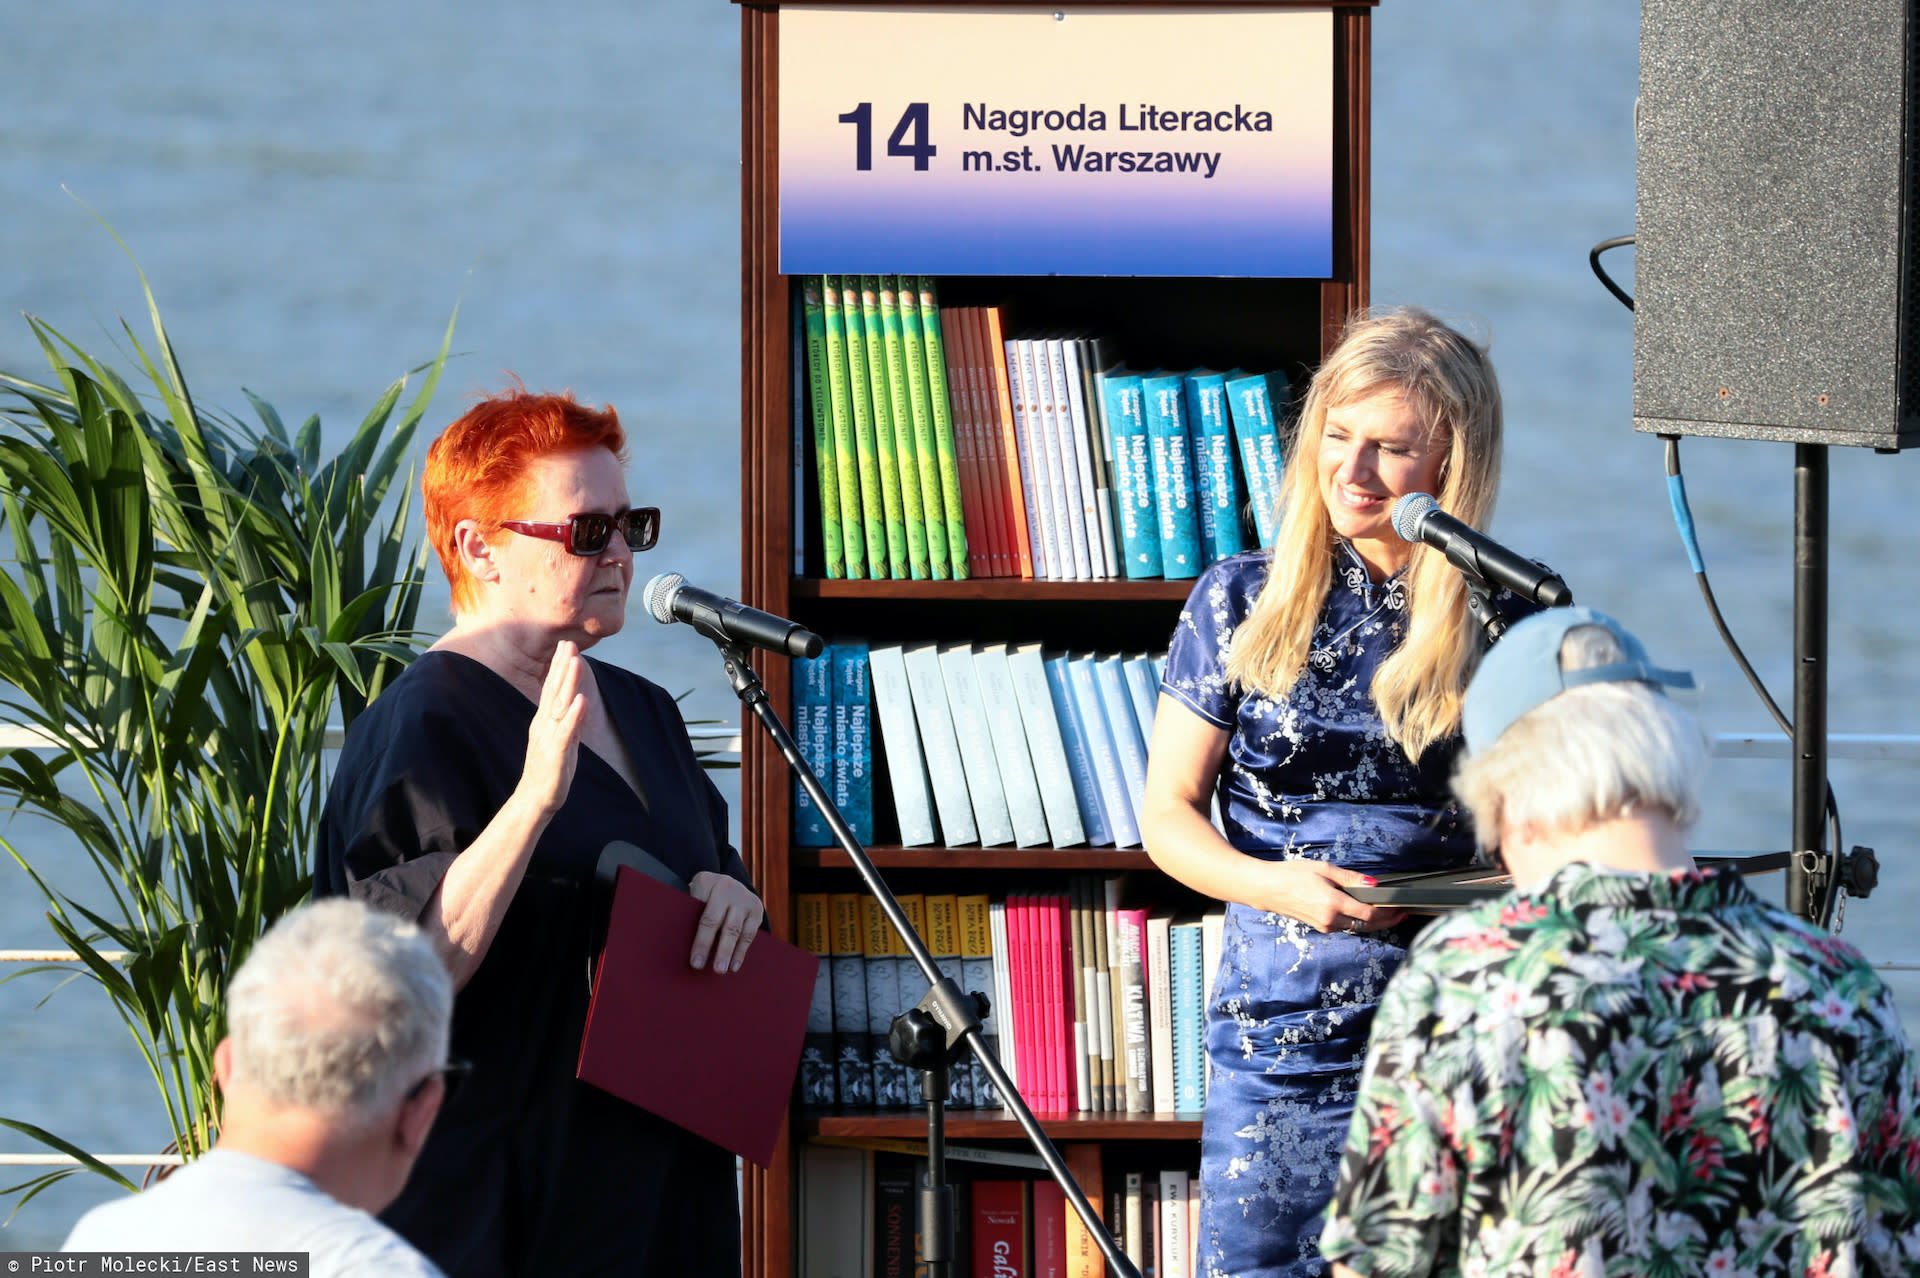 Wszyscy miłośnicy literatury mogą wziąć udział w czytaniu fragmentów dzieł zgłoszonych w ramach 14. Nagrody Literackiej m.st. Warszawy